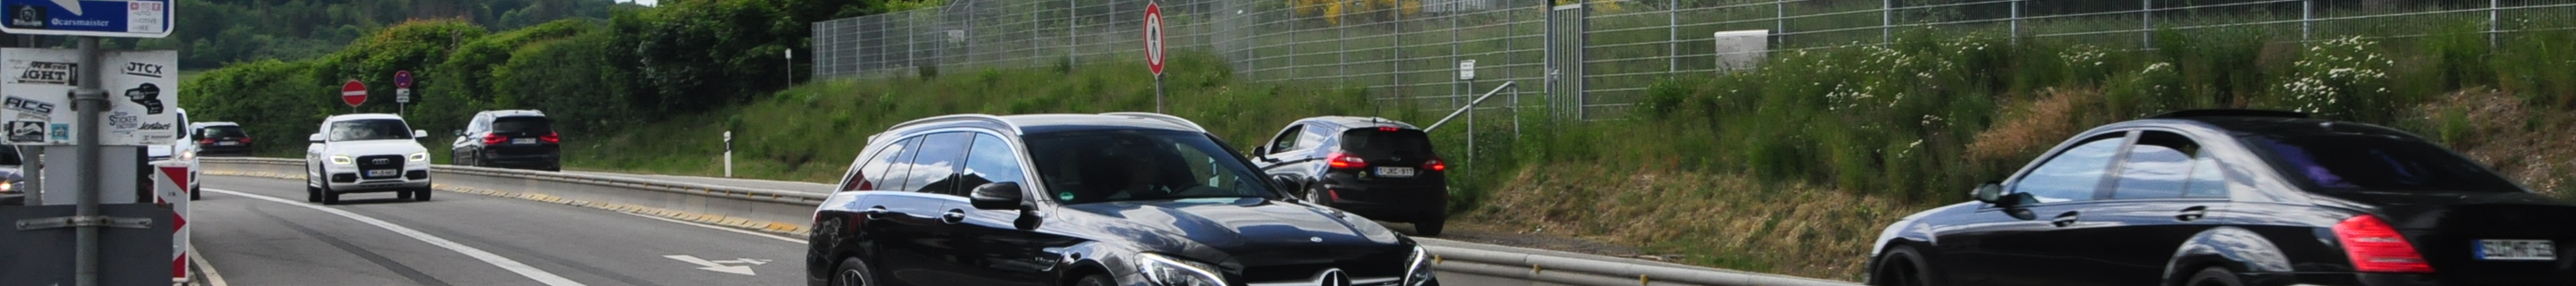 Mercedes-AMG C 63 Estate S205